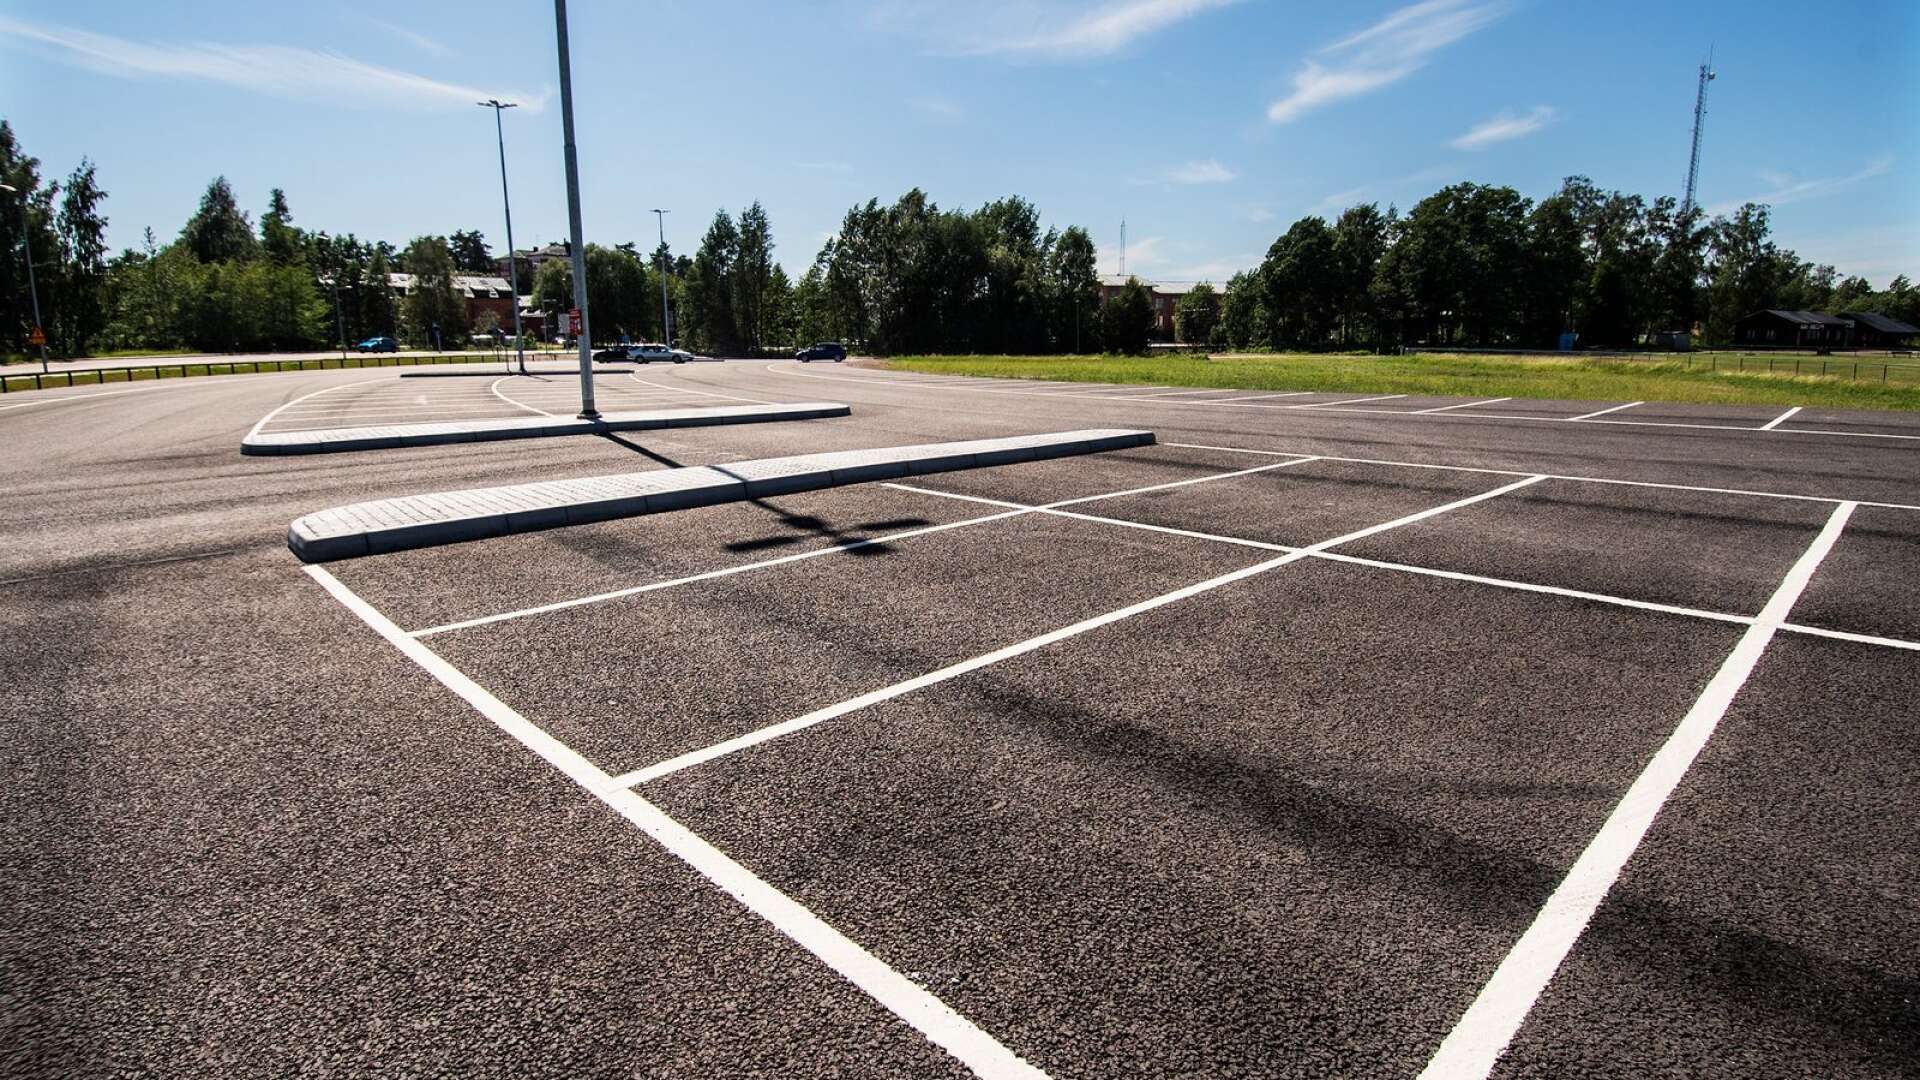 Karlstads kommun ska betala närmare en kvarts miljon kronor i sanktionsavgift till Karlstads kommun. Detta efter att teknik- och fastighetsförvaltningen byggt en parkeringsplats utan bygglov.